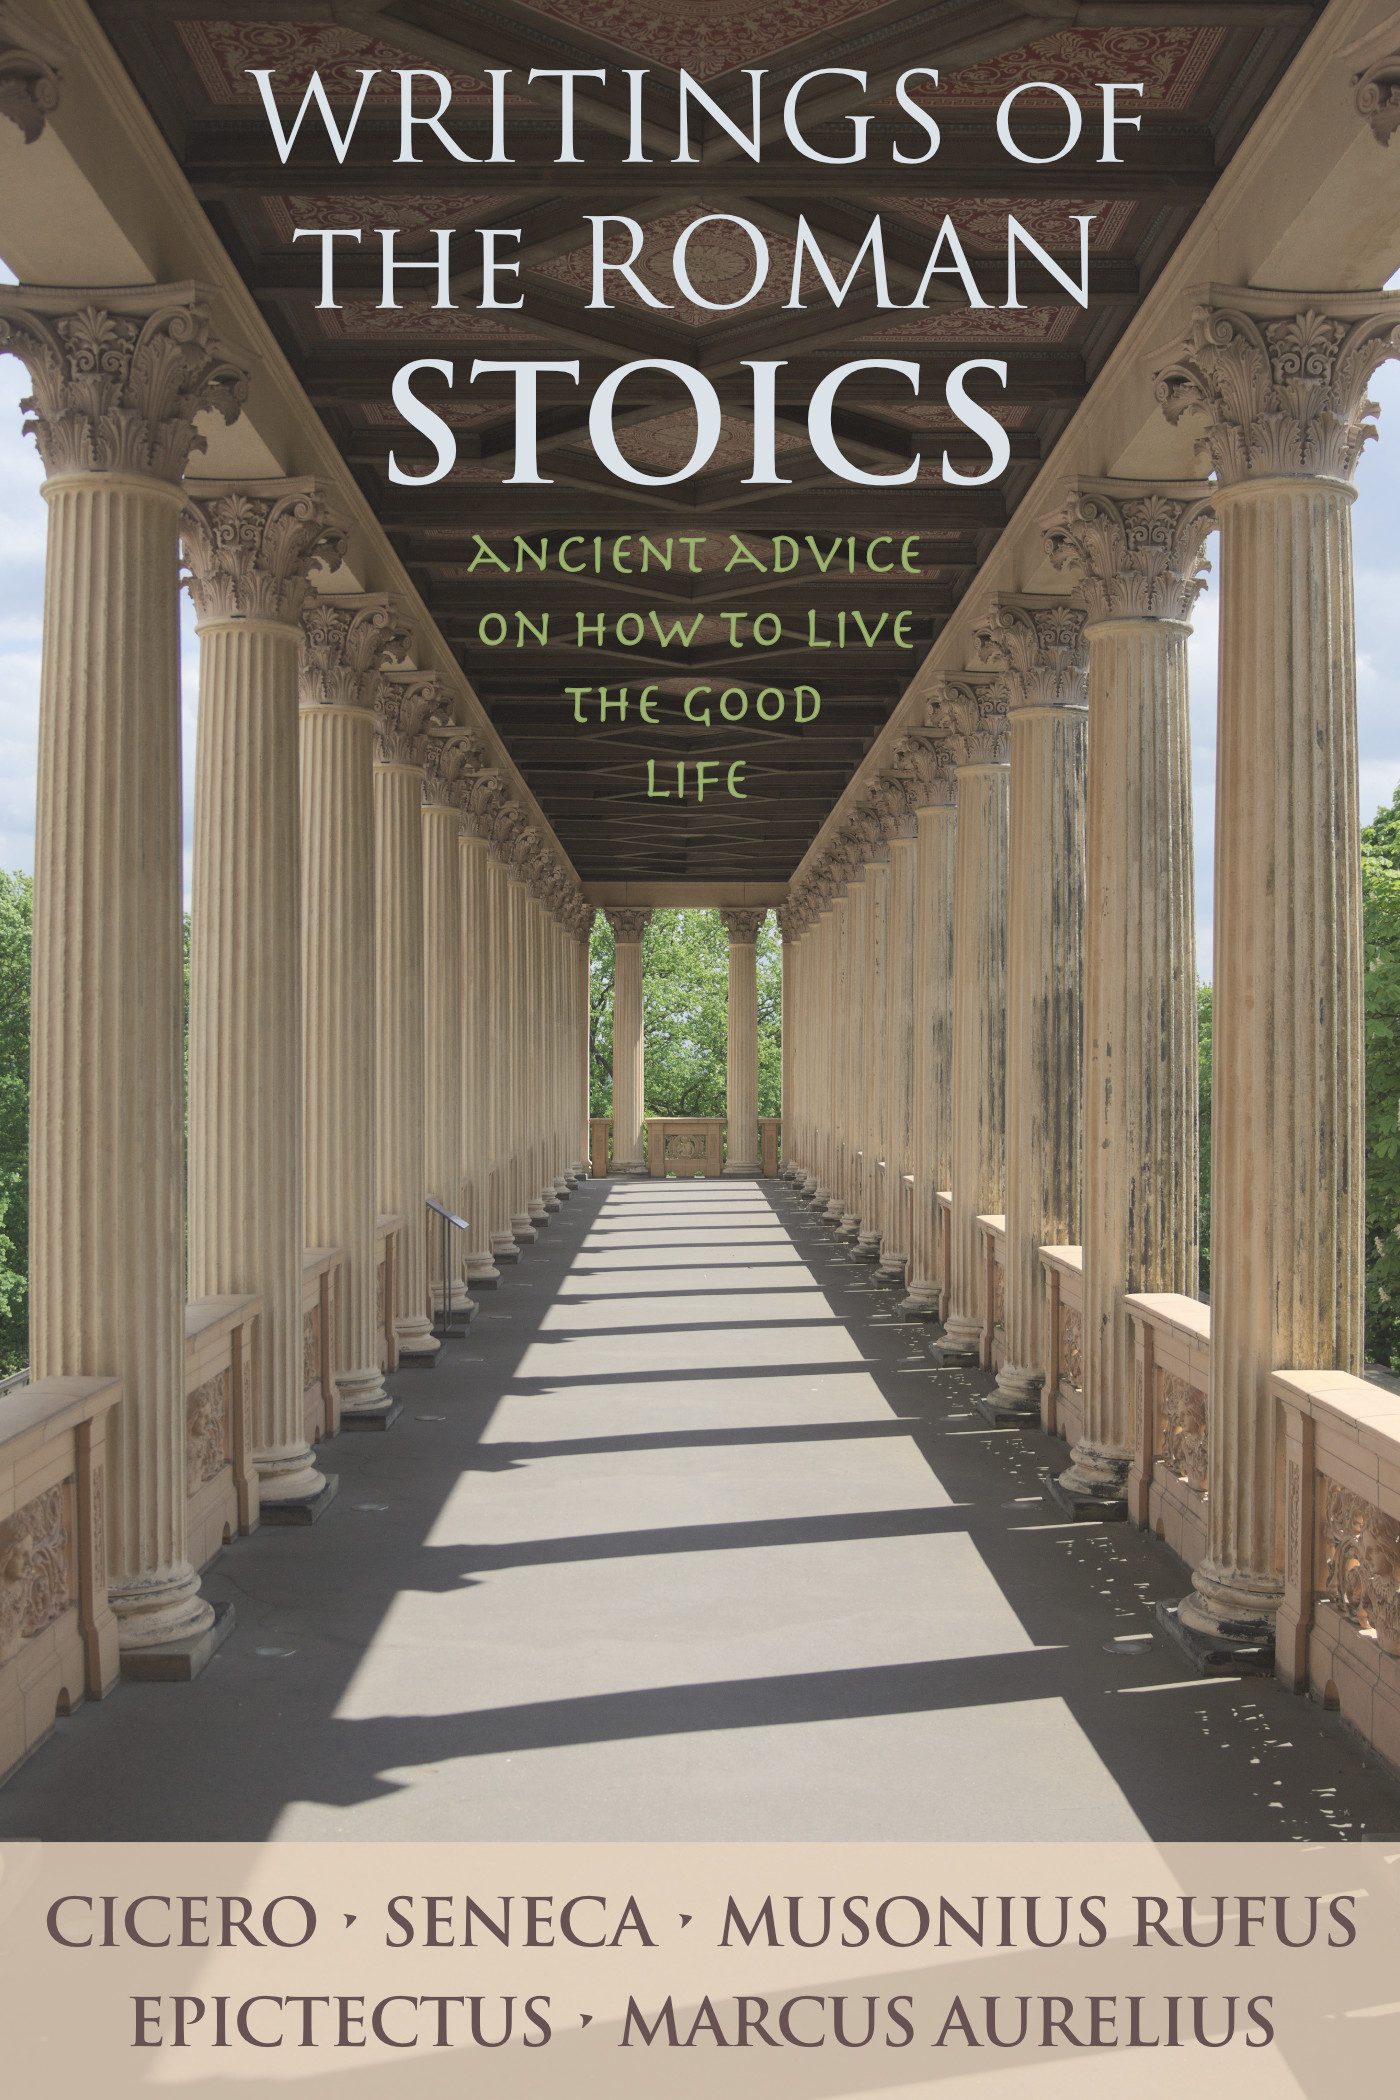 Writings of the Roman Stoics by Cicero, Seneca the Younger, Musonius Rufus, Epictetus & Marcus Aurelius